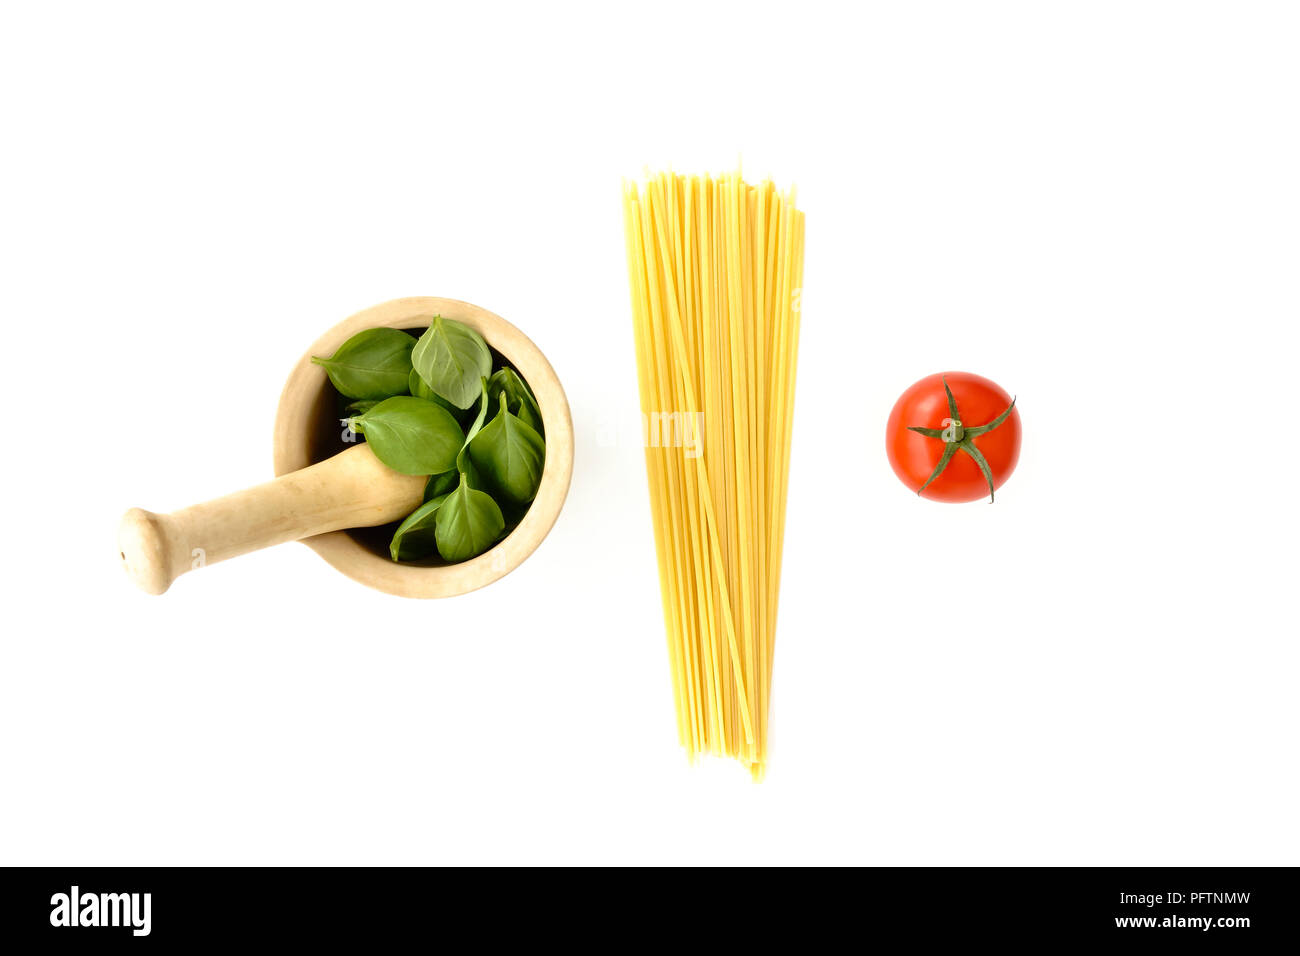 Mortaio riempito con foglie di basilico, spaghetti e un pomodoro su sfondo bianco. I colori della bandiera italiana. Foto Stock